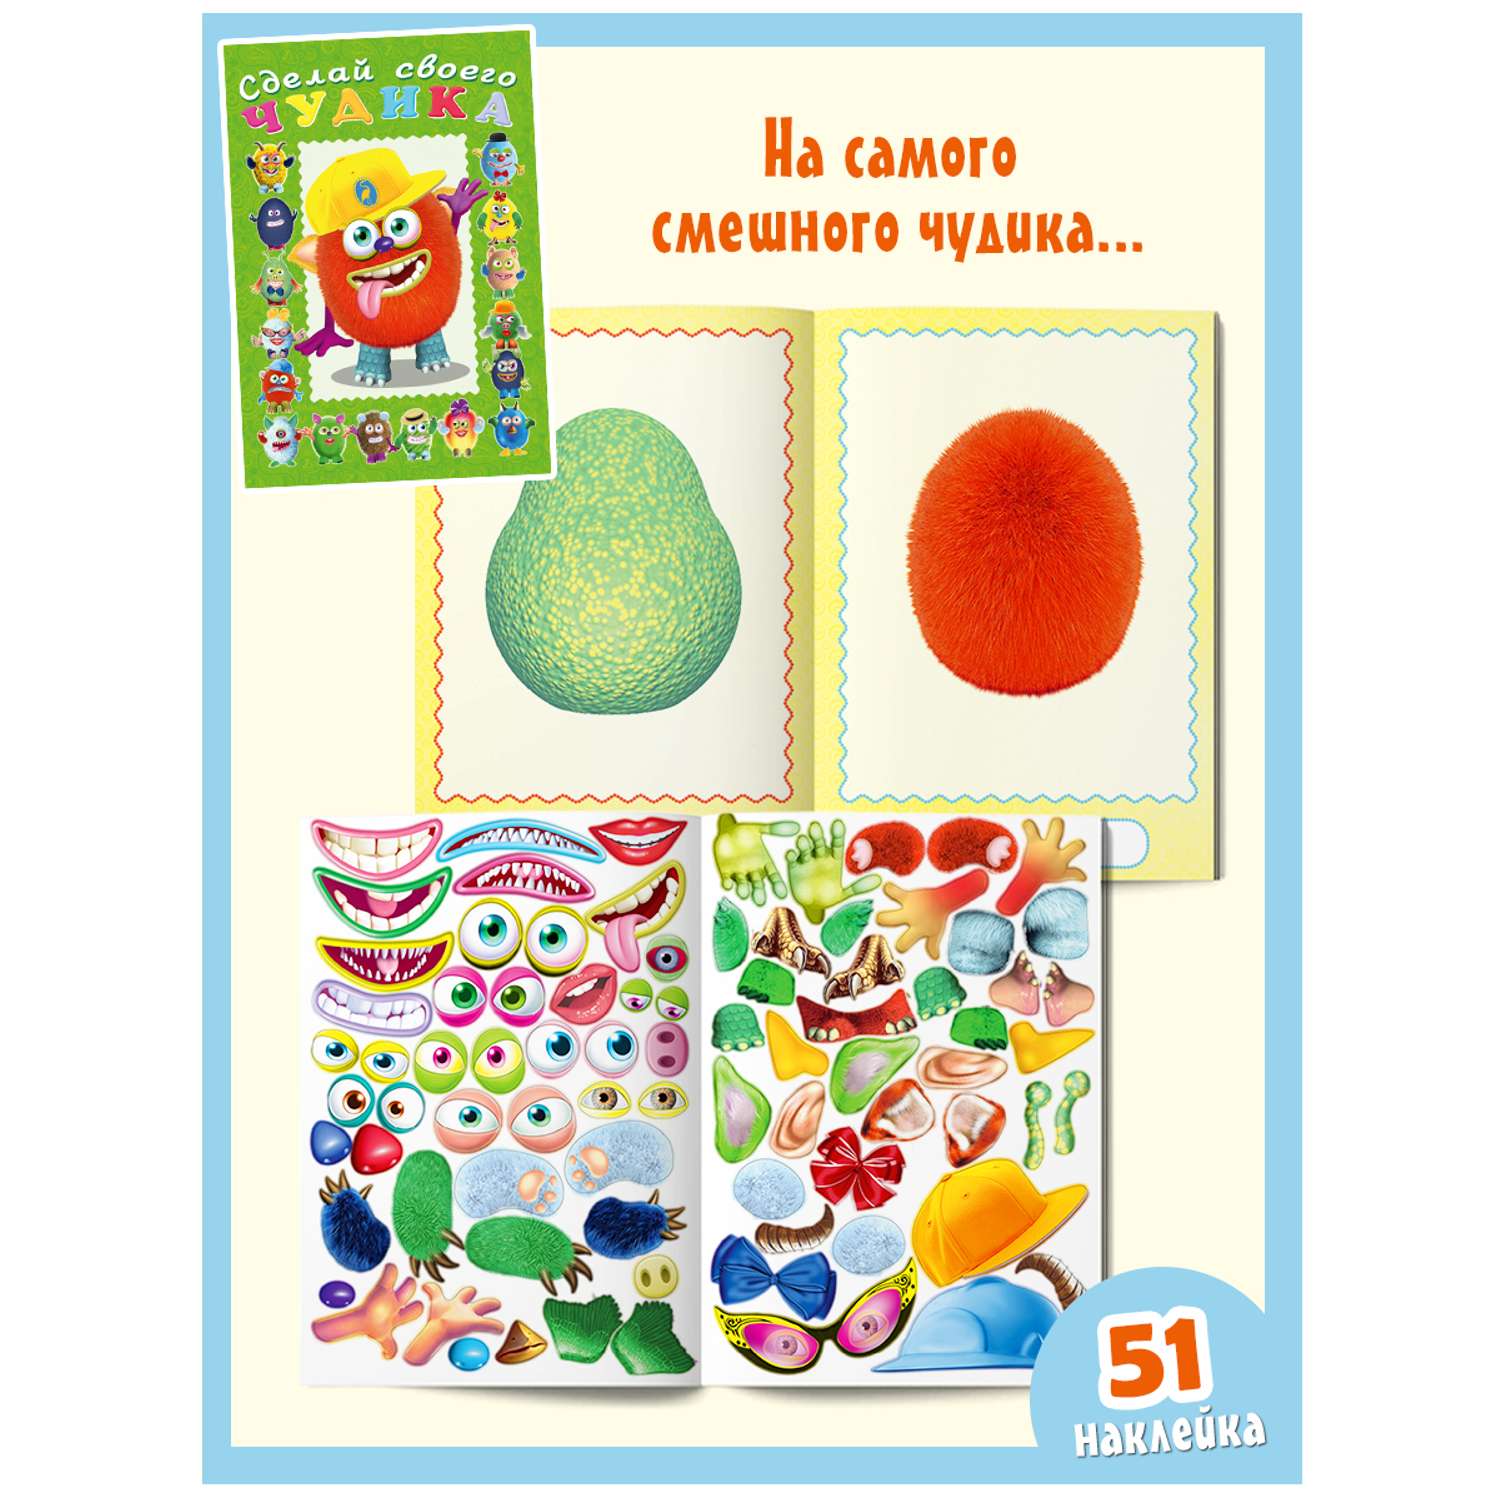 Комплект книг с наклейками Фламинго Книги для детей развивающие Сделай своего чудика из наклеек Набор для творчества - фото 6